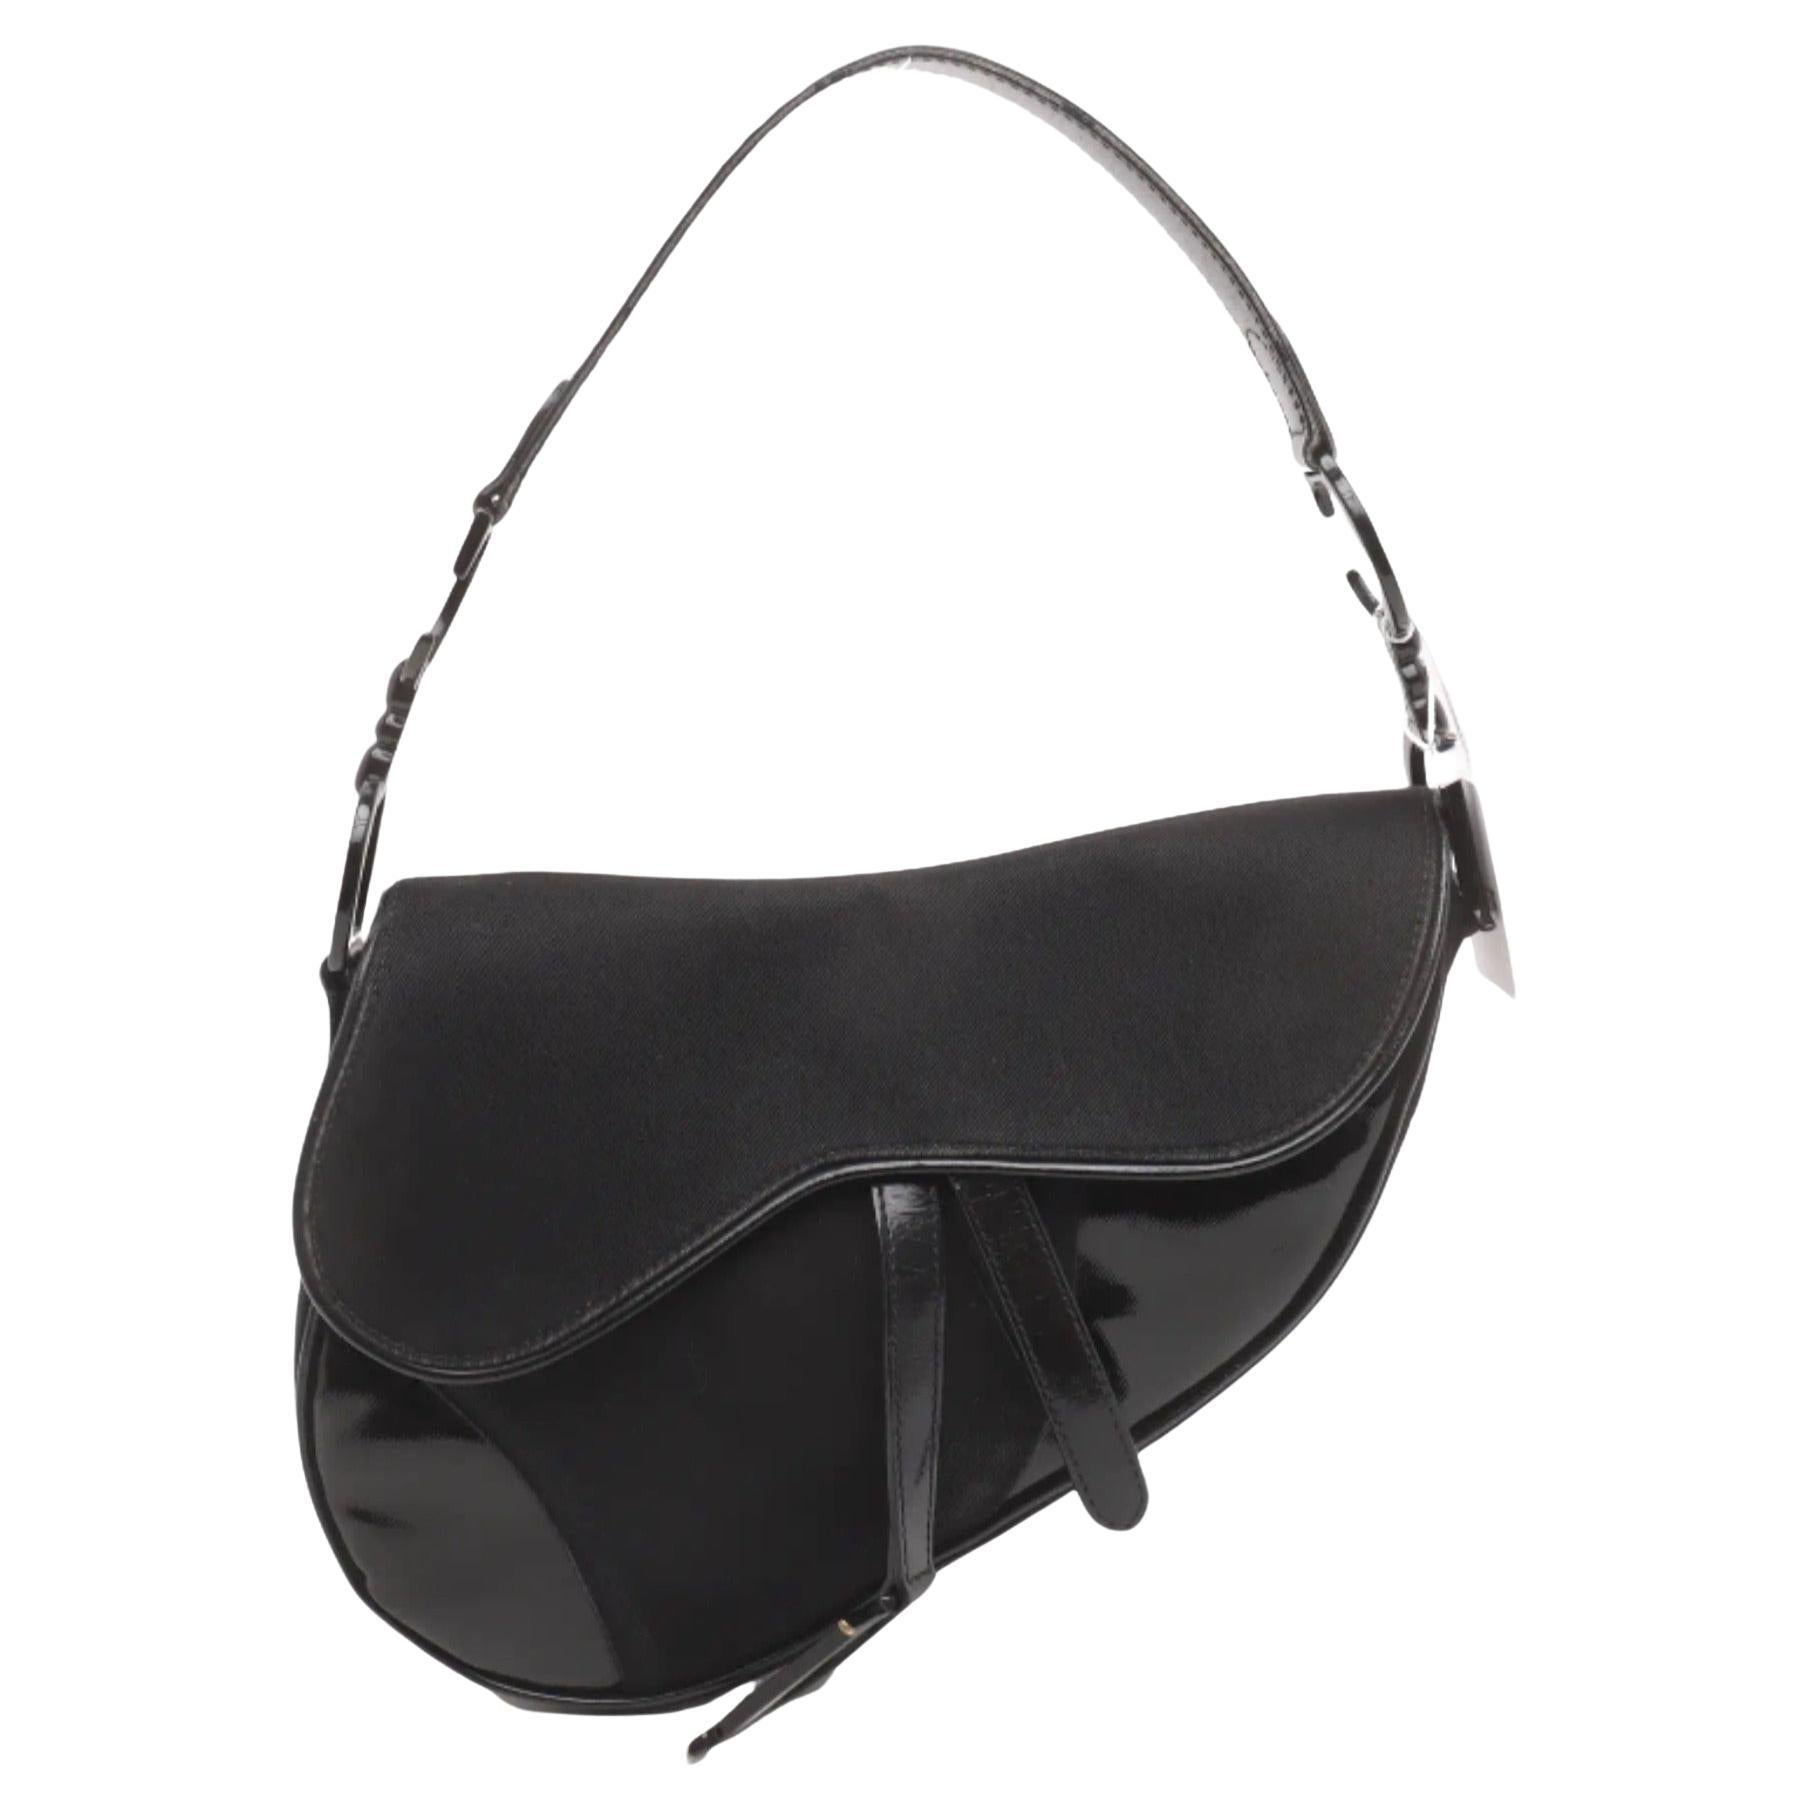 How do I attach a strap to a Dior saddle bag?